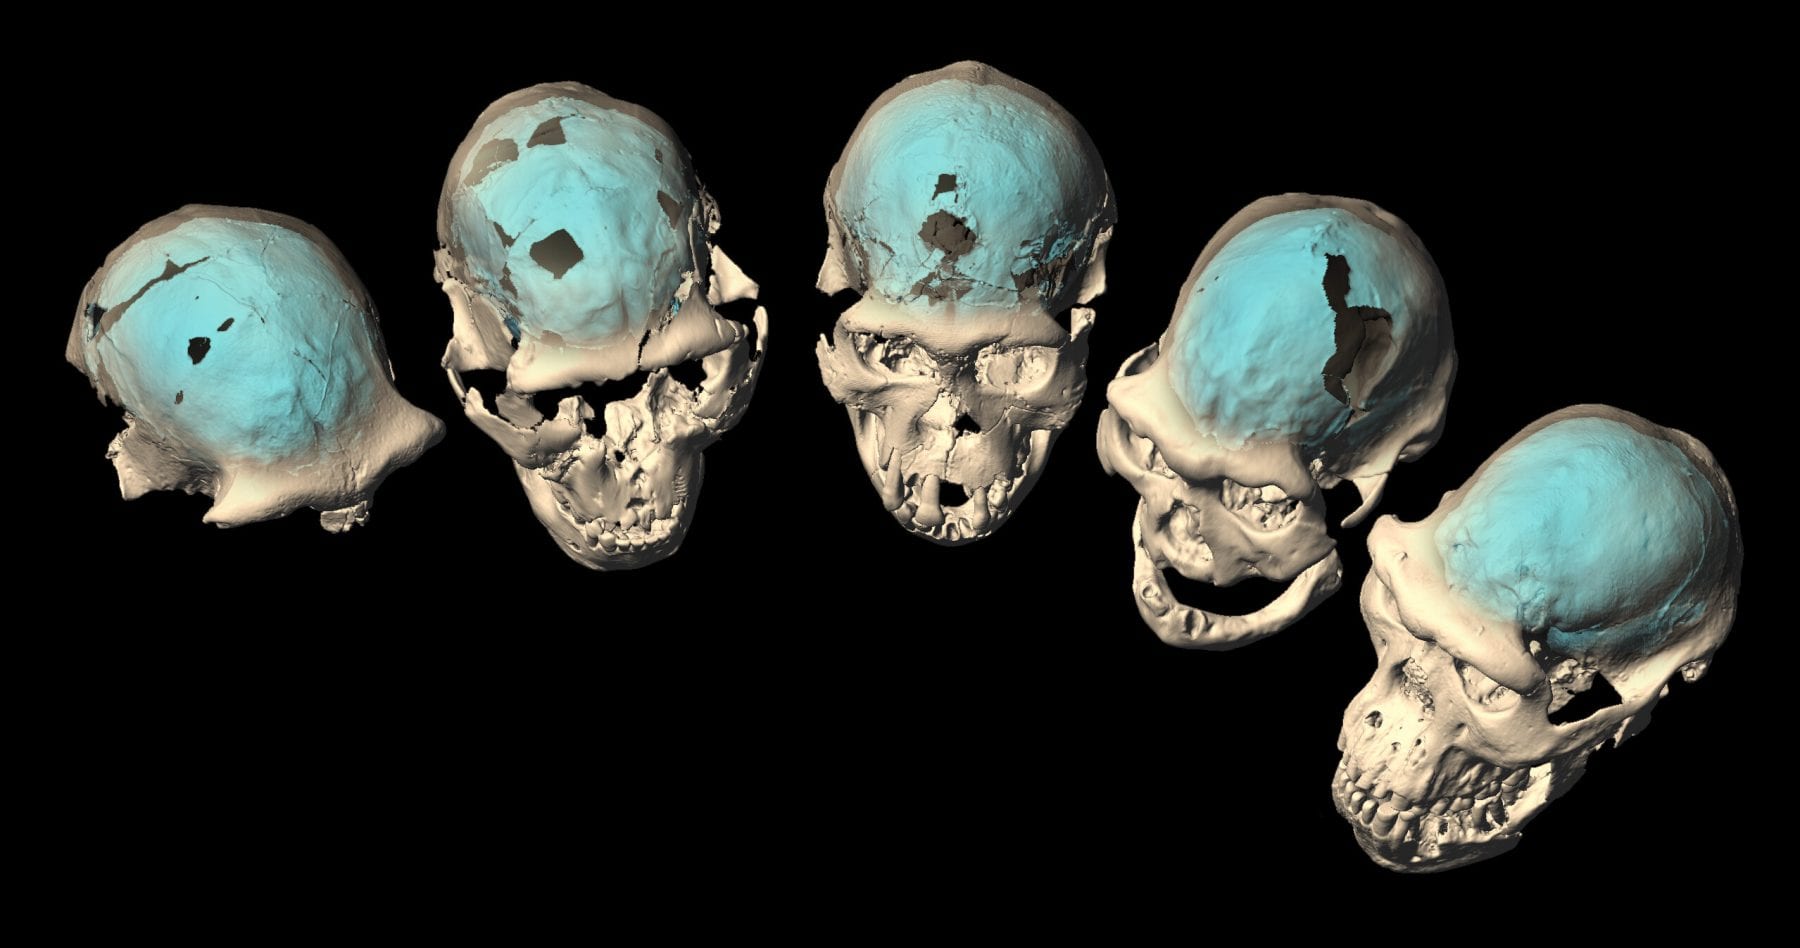 Компьютерная томография была использована для создания виртуальной реконструкции эндокастов ранних черепов Homo из Дманиси. Предоставлено: М. Понсе де Леон и Ч. Цолликофер, Цюрихский университет